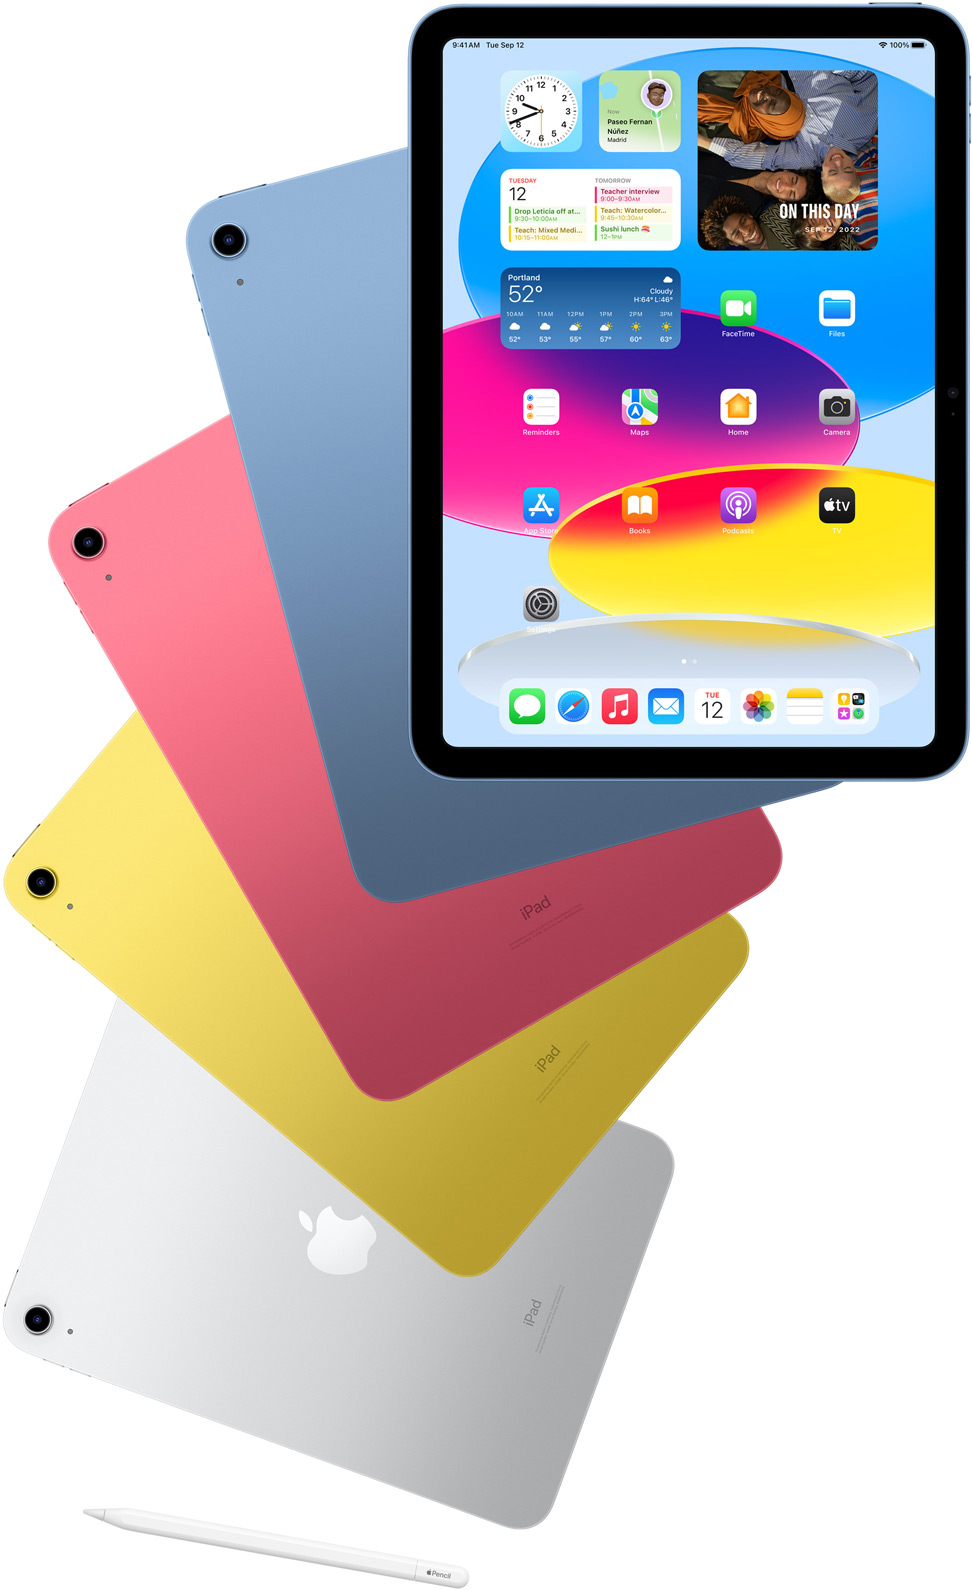 Vista frontal do ecrã principal do iPad com outros iPad atrás nas cores azul, rosa, amarelo e prateado. Apple Pencil junto da disposição de modelos de iPad.